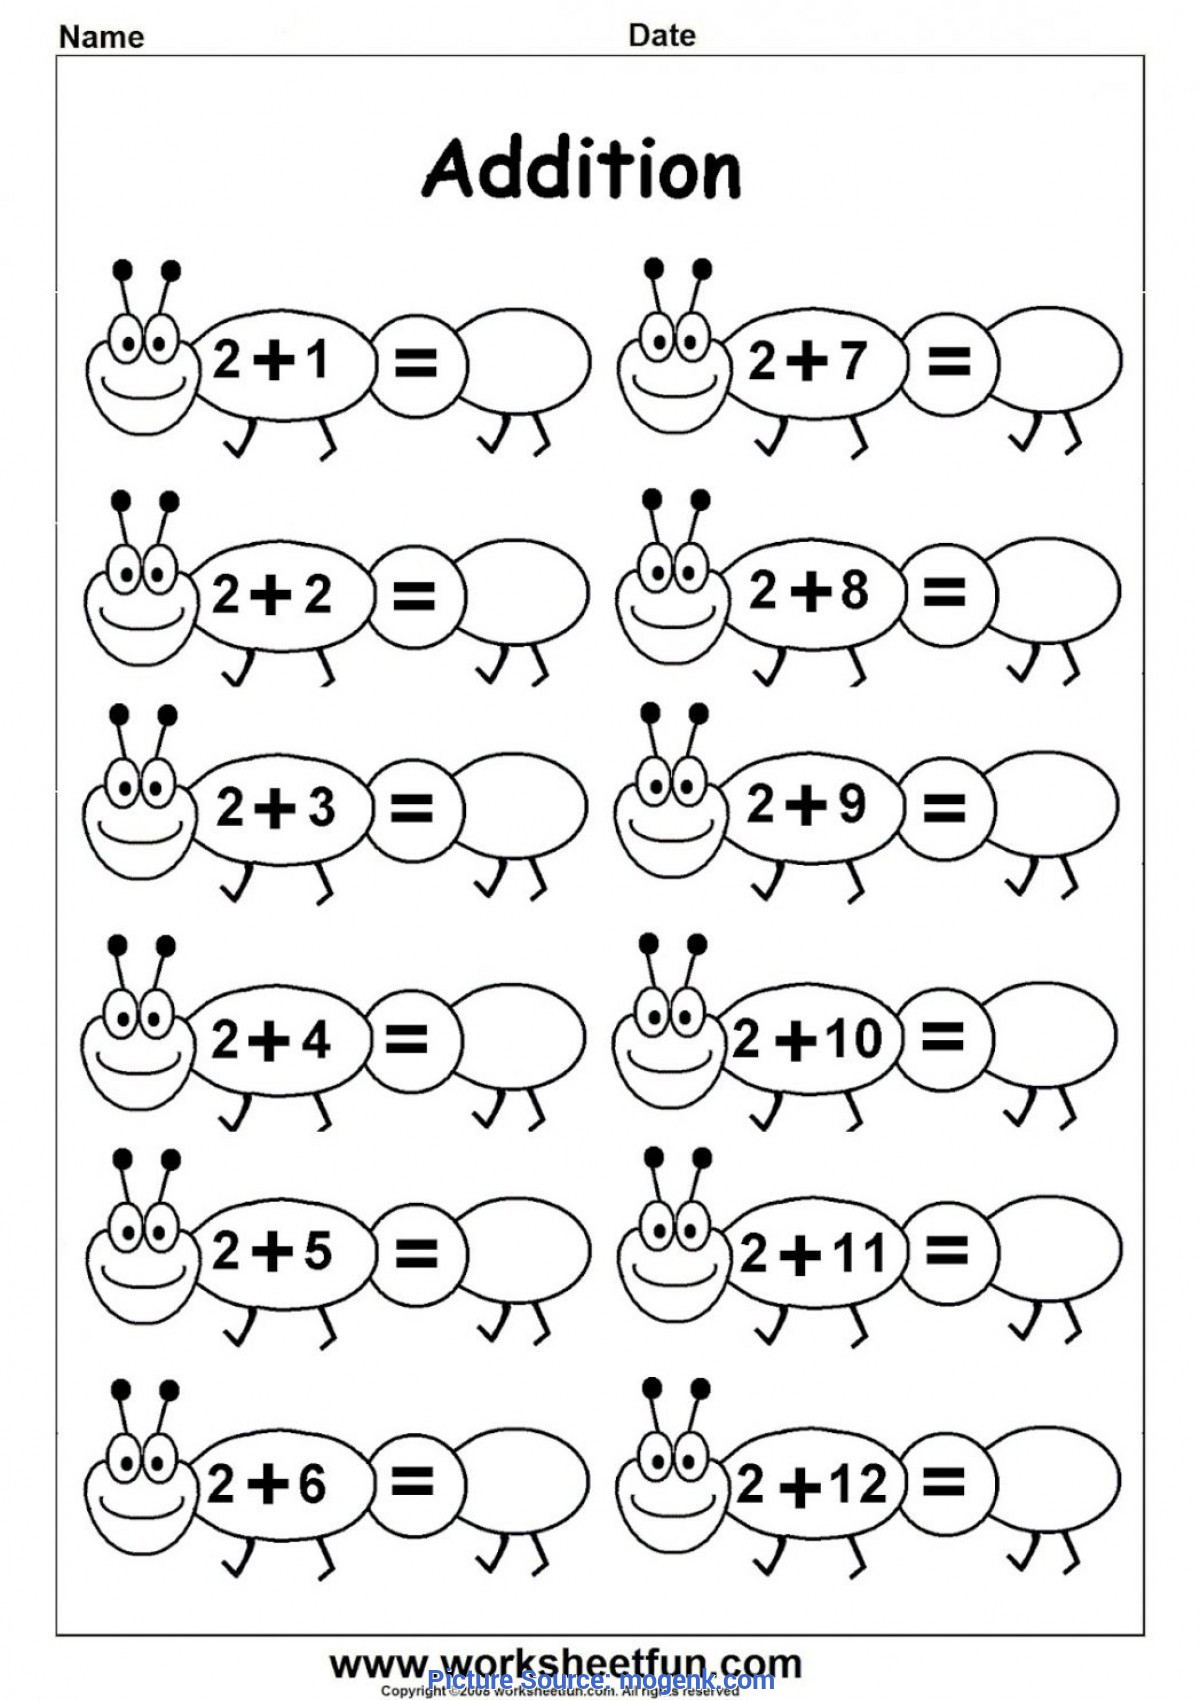 Simple Math For Preschoolers Free Preschool-Worksheets